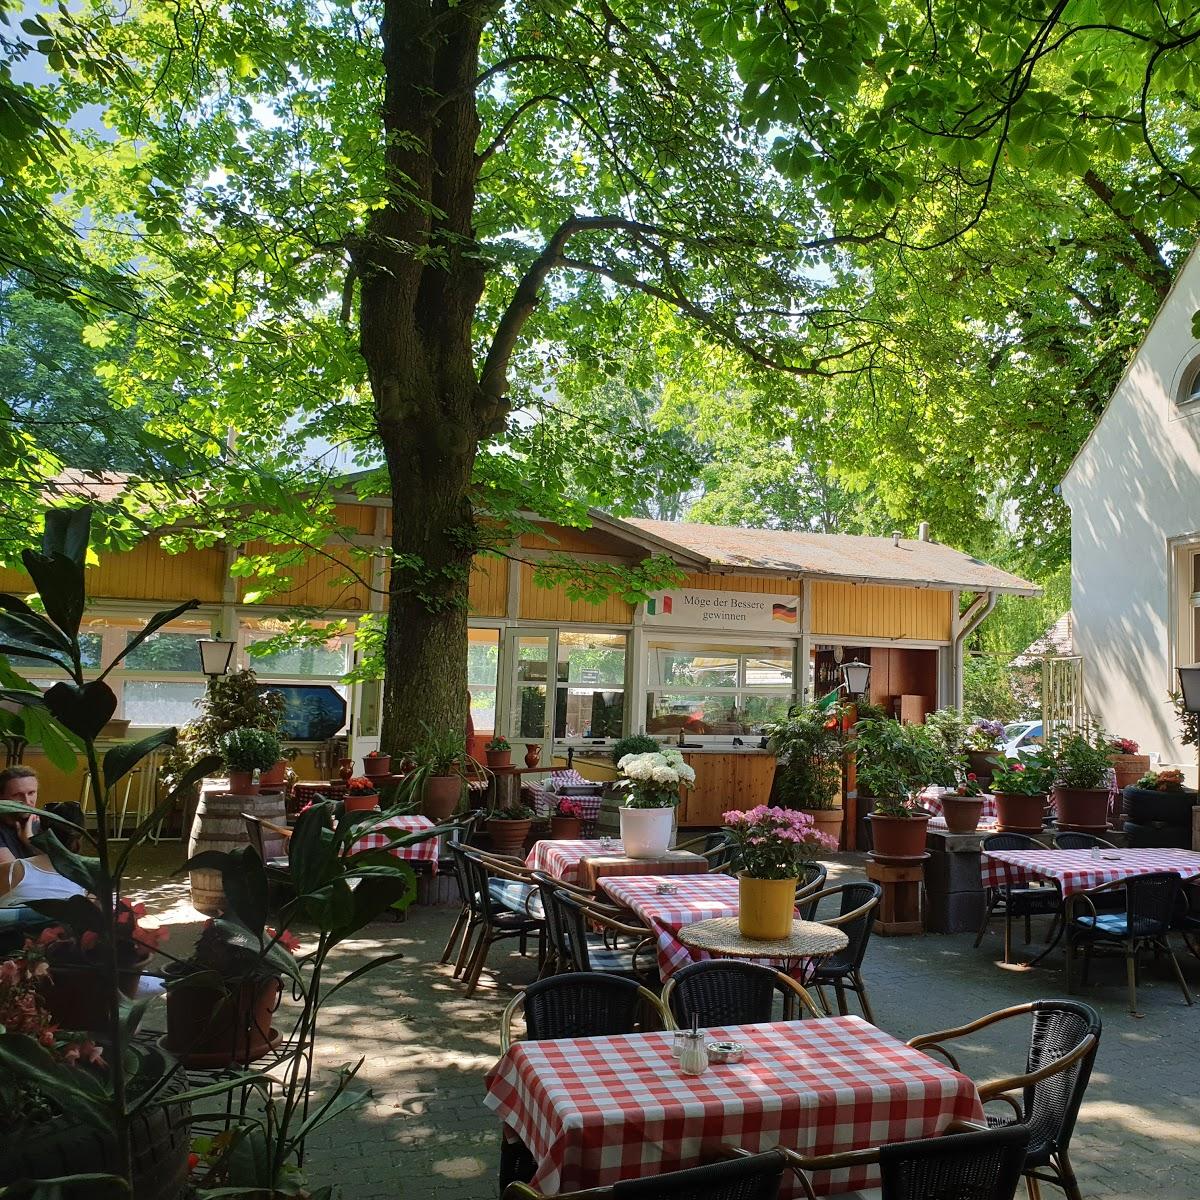 Restaurant "Ristorante Il Castello" in Berlin